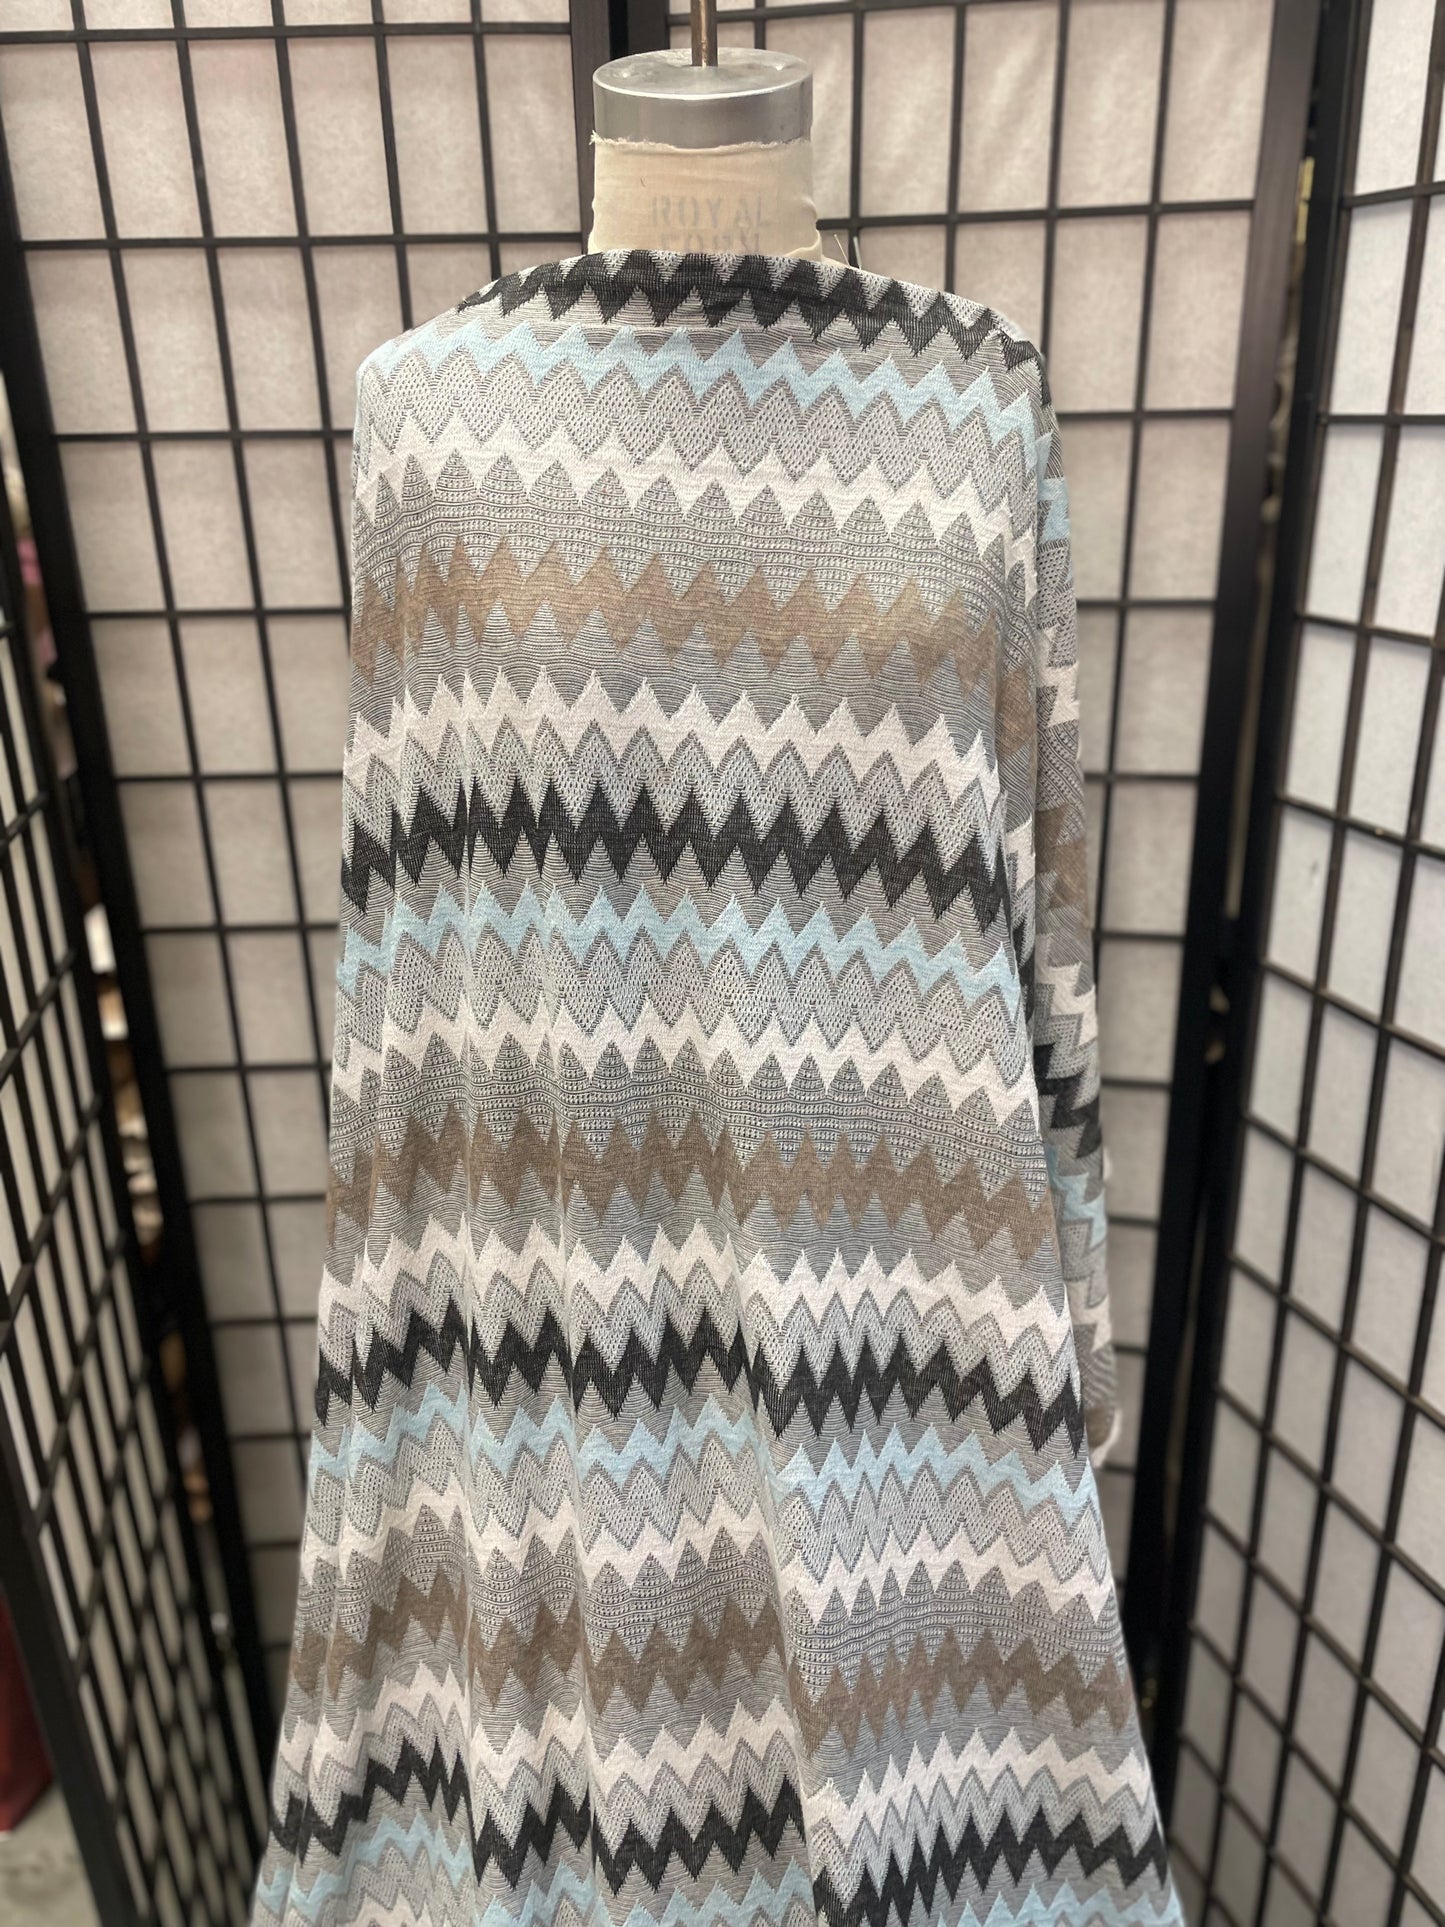 Chevron Poly Sweater Knit - Blue, Grey, White, Tan, Black